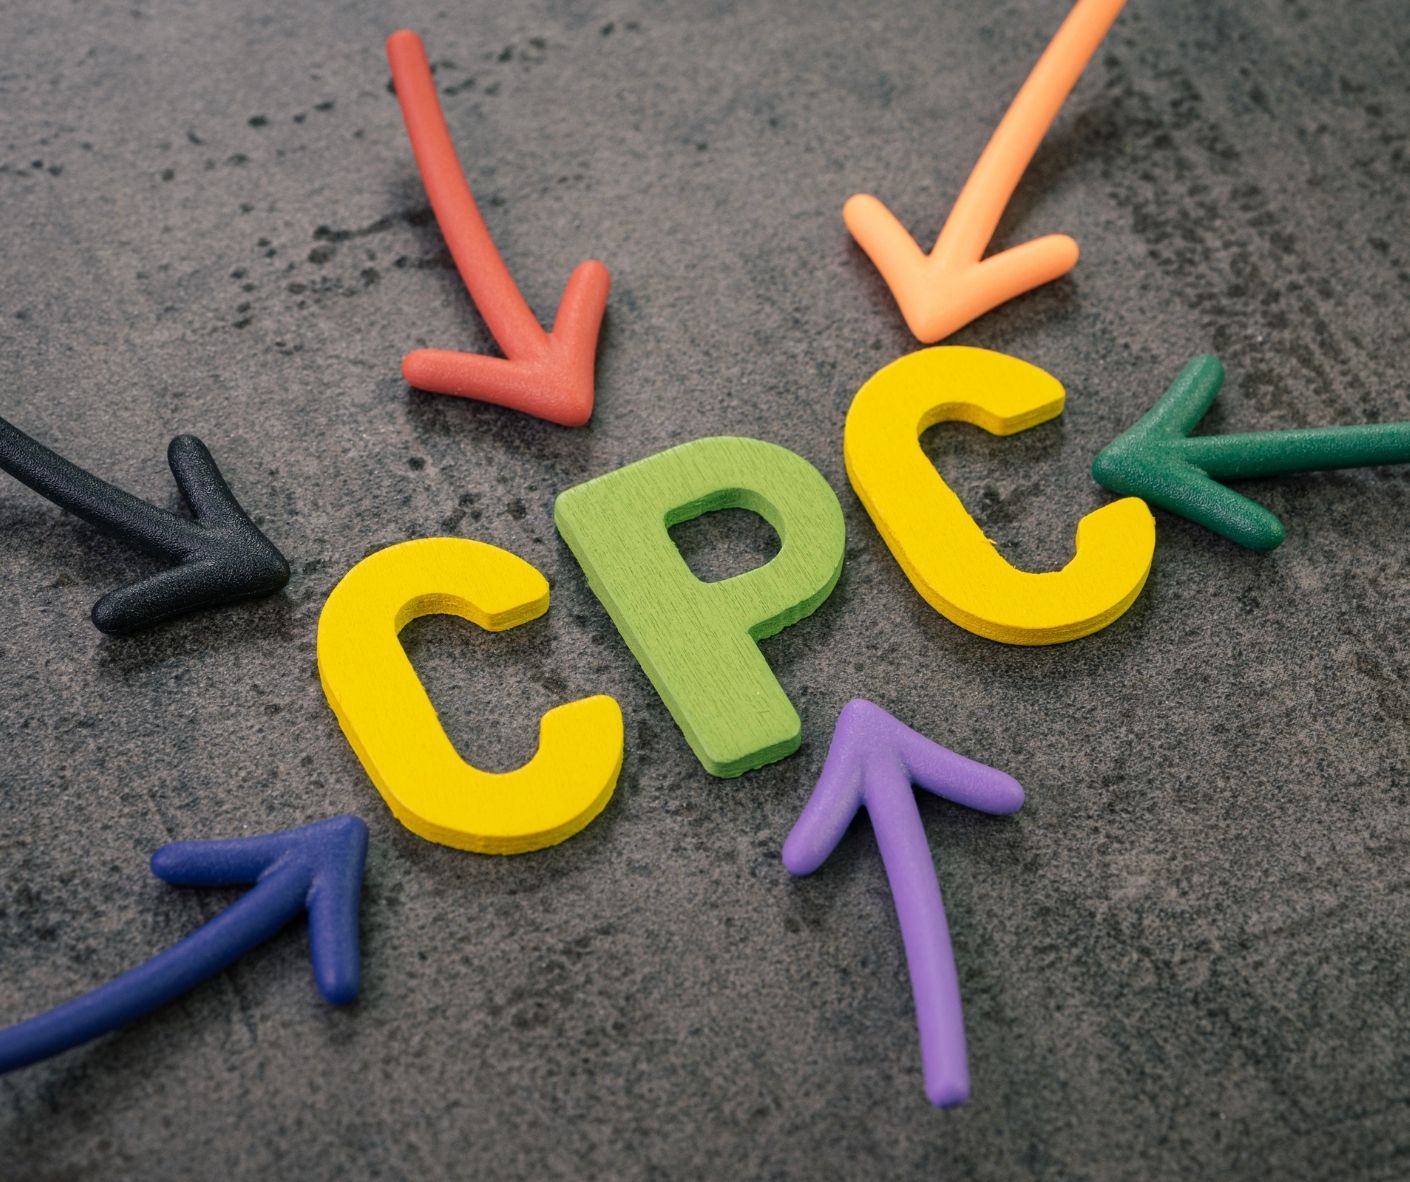 Hướng dẫn CPM là gì? Phân biệt 2 hình thức quảng cáo CPM và CPC #1